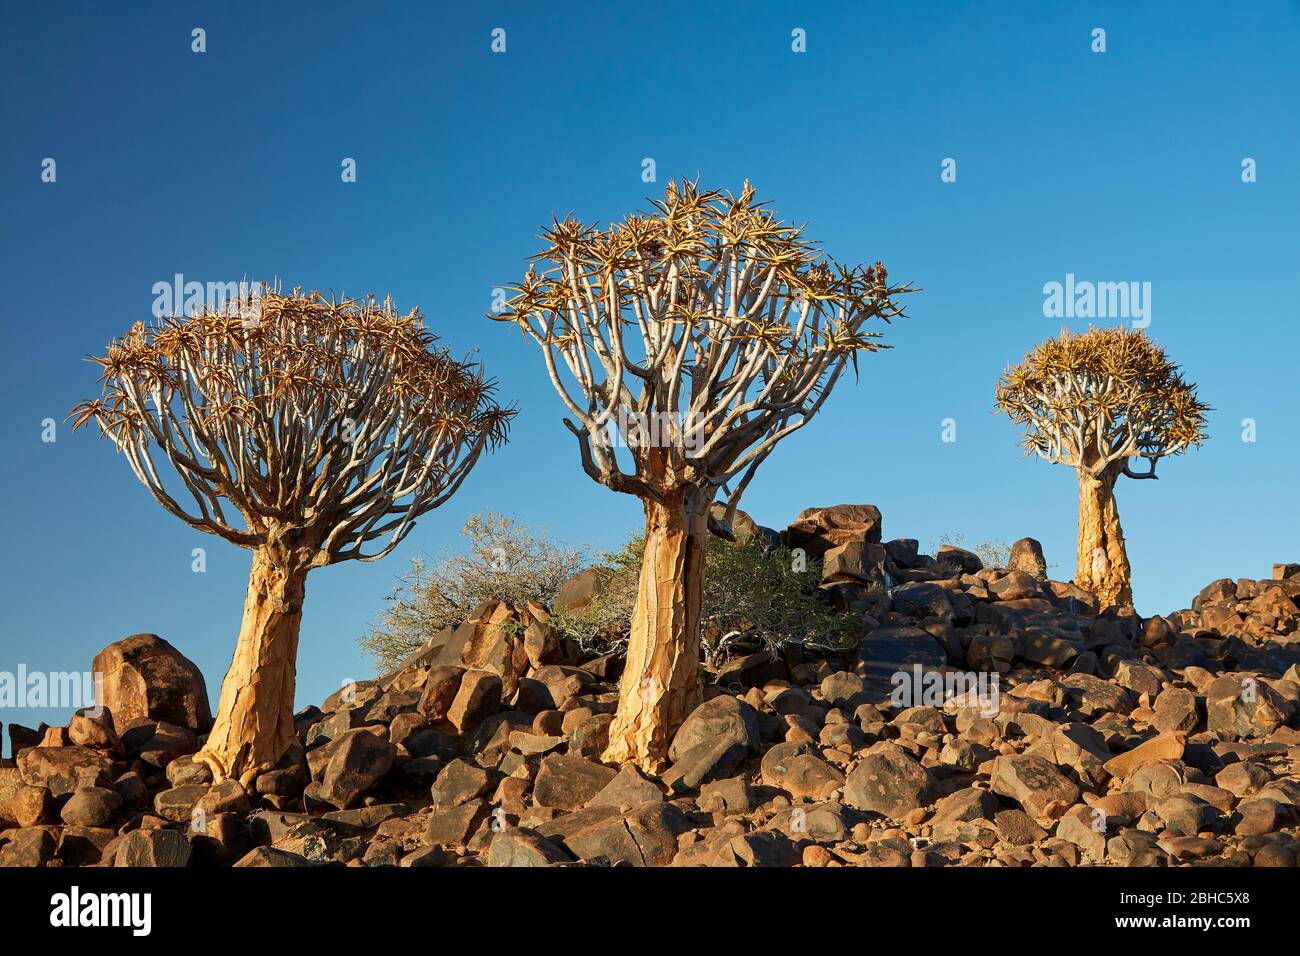 Kocurboom ou arbres de quiver (Aloe dichotoma), Mesosaurus Fossil Camp, près de Keetmanshoop, Namibie, Afrique Banque D'Images